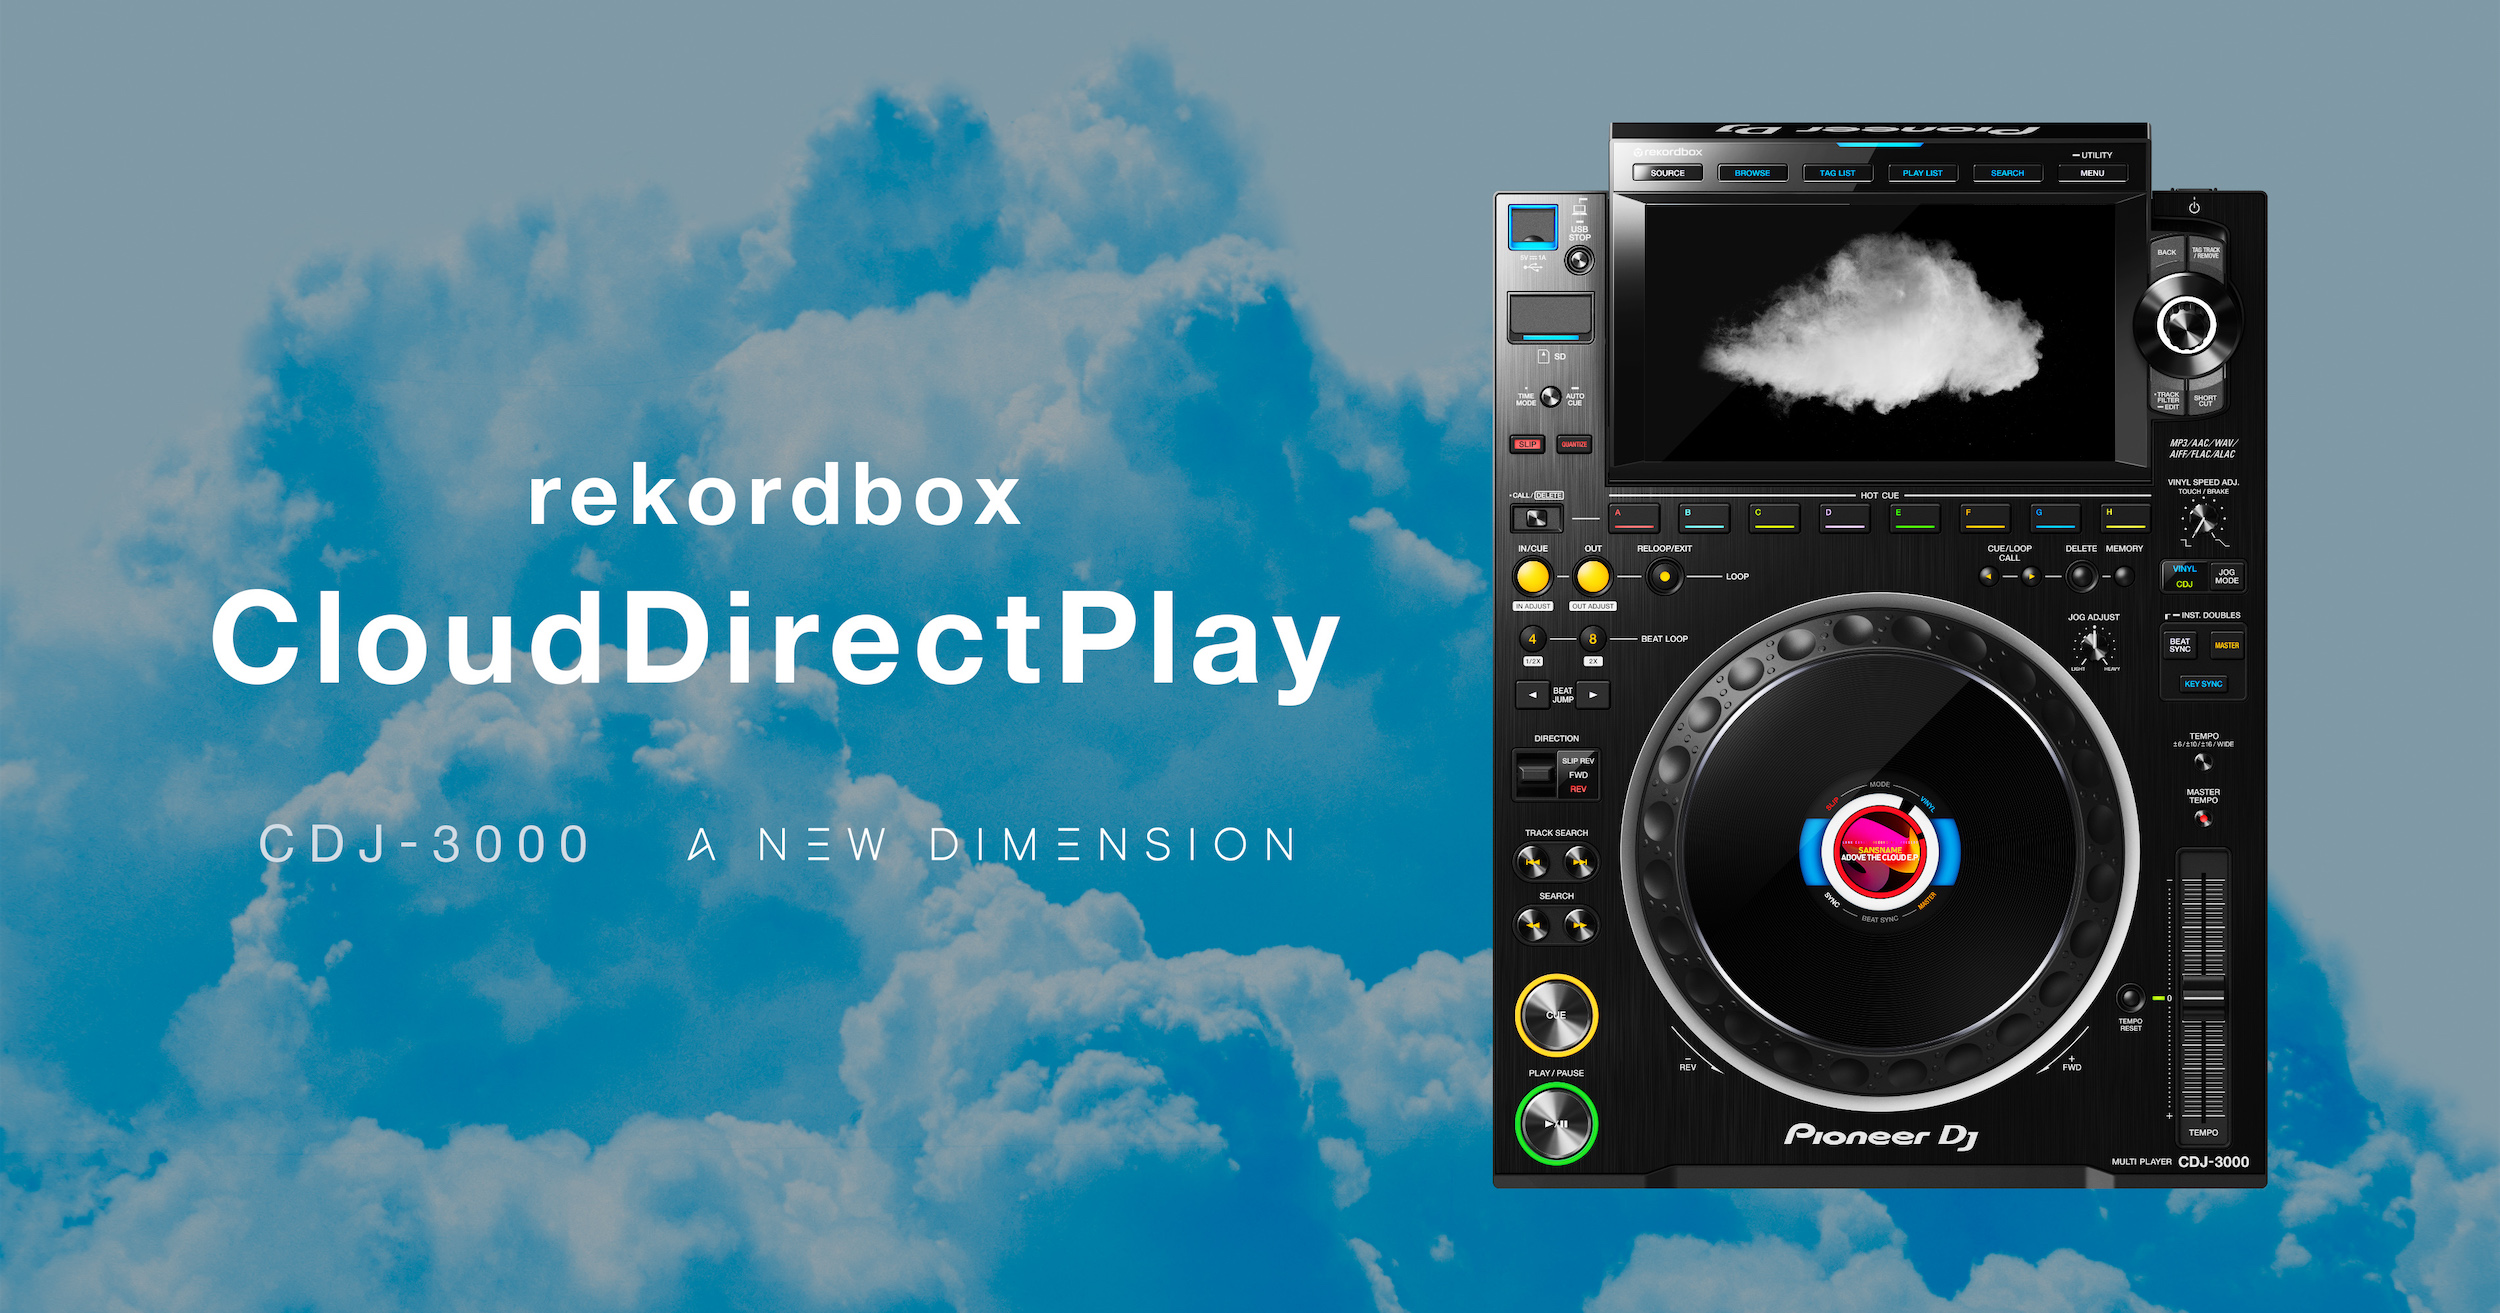 Nueva actualización del firmware del Pioneer CDJ-3000 que permite reproducir música desde la nube